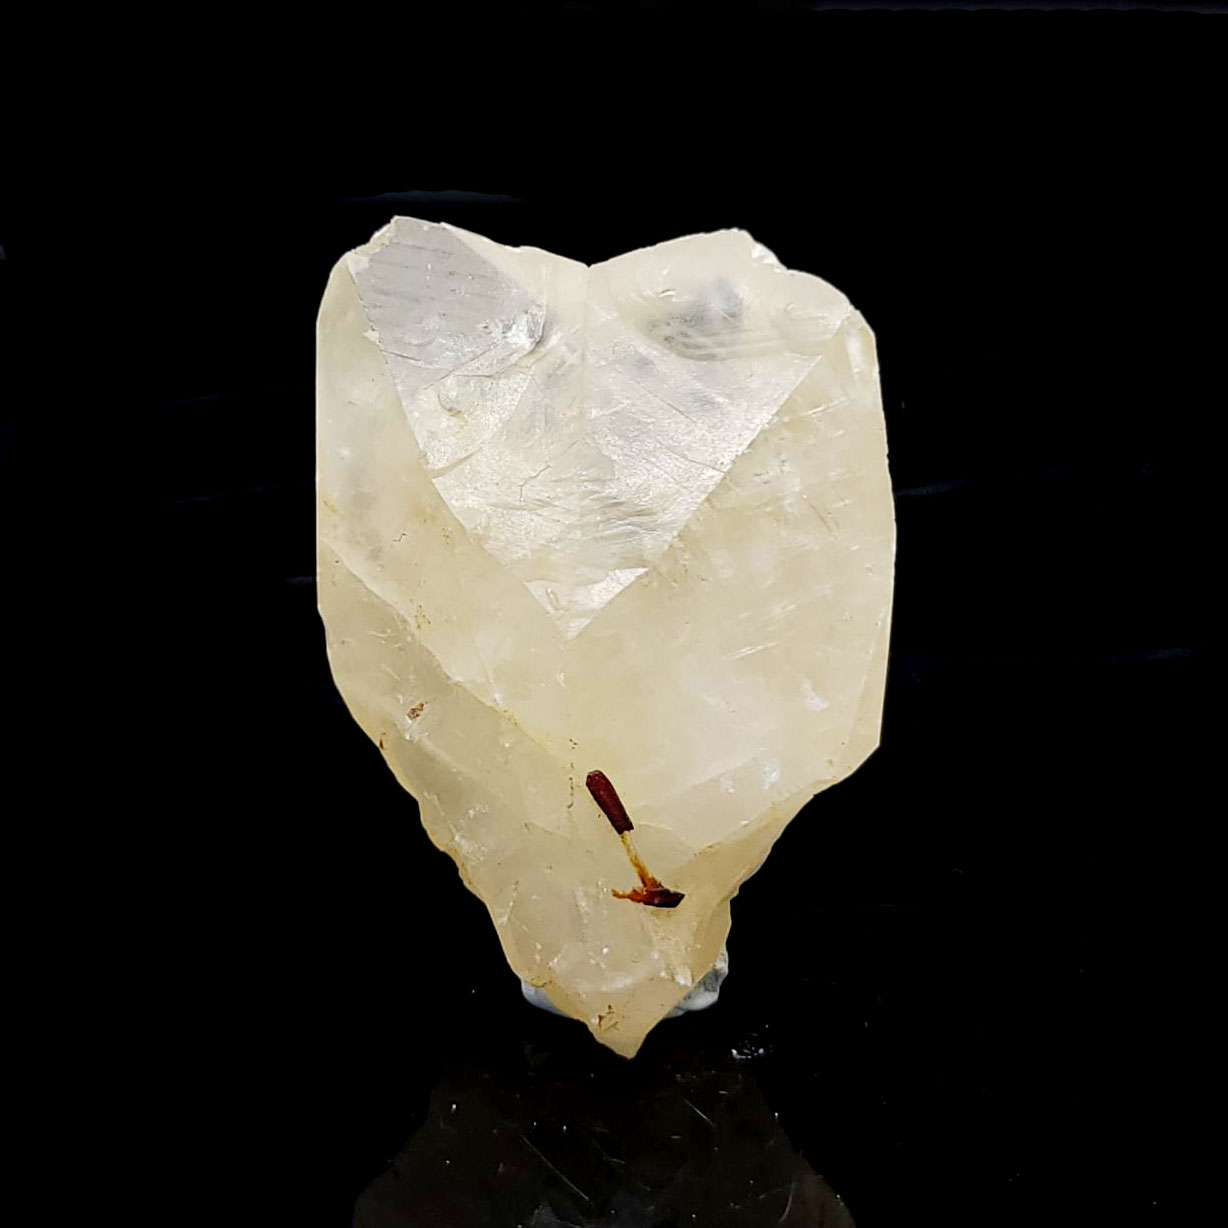 圖示-方解石雙晶原石(Calcite)